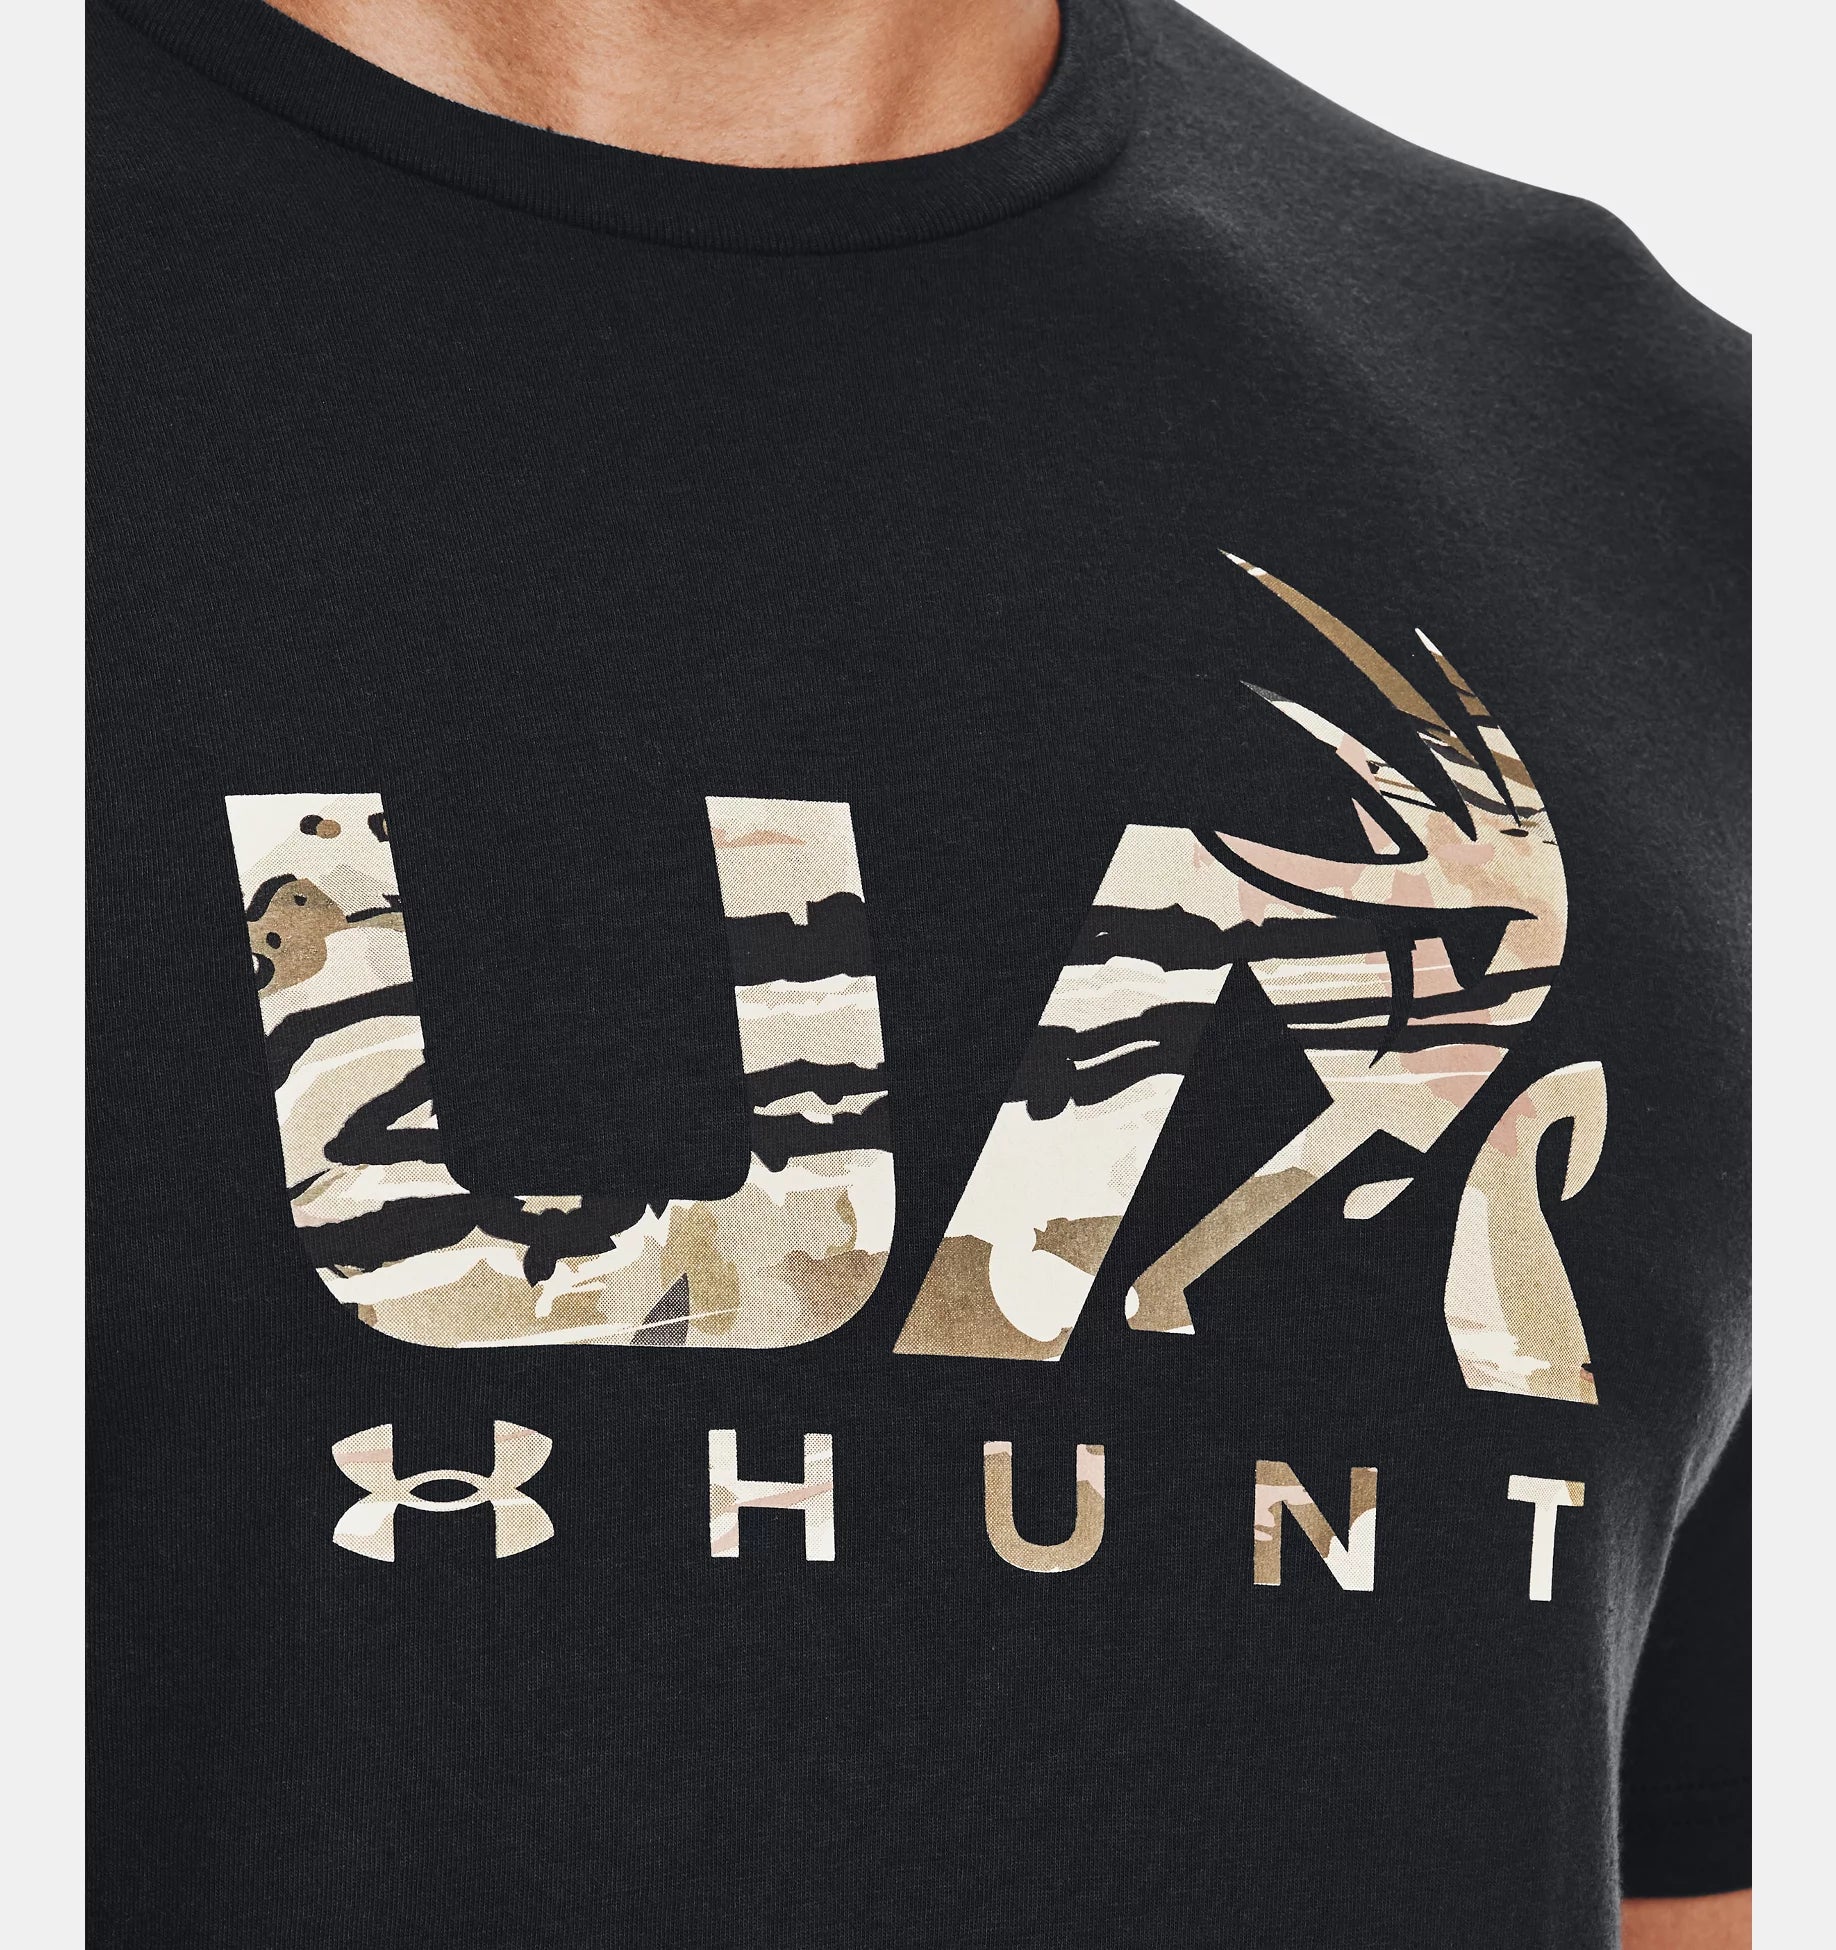 Under Armour Men's UA Antler Hunt Logo T-Shirt 1366014 - Newest Arrivals